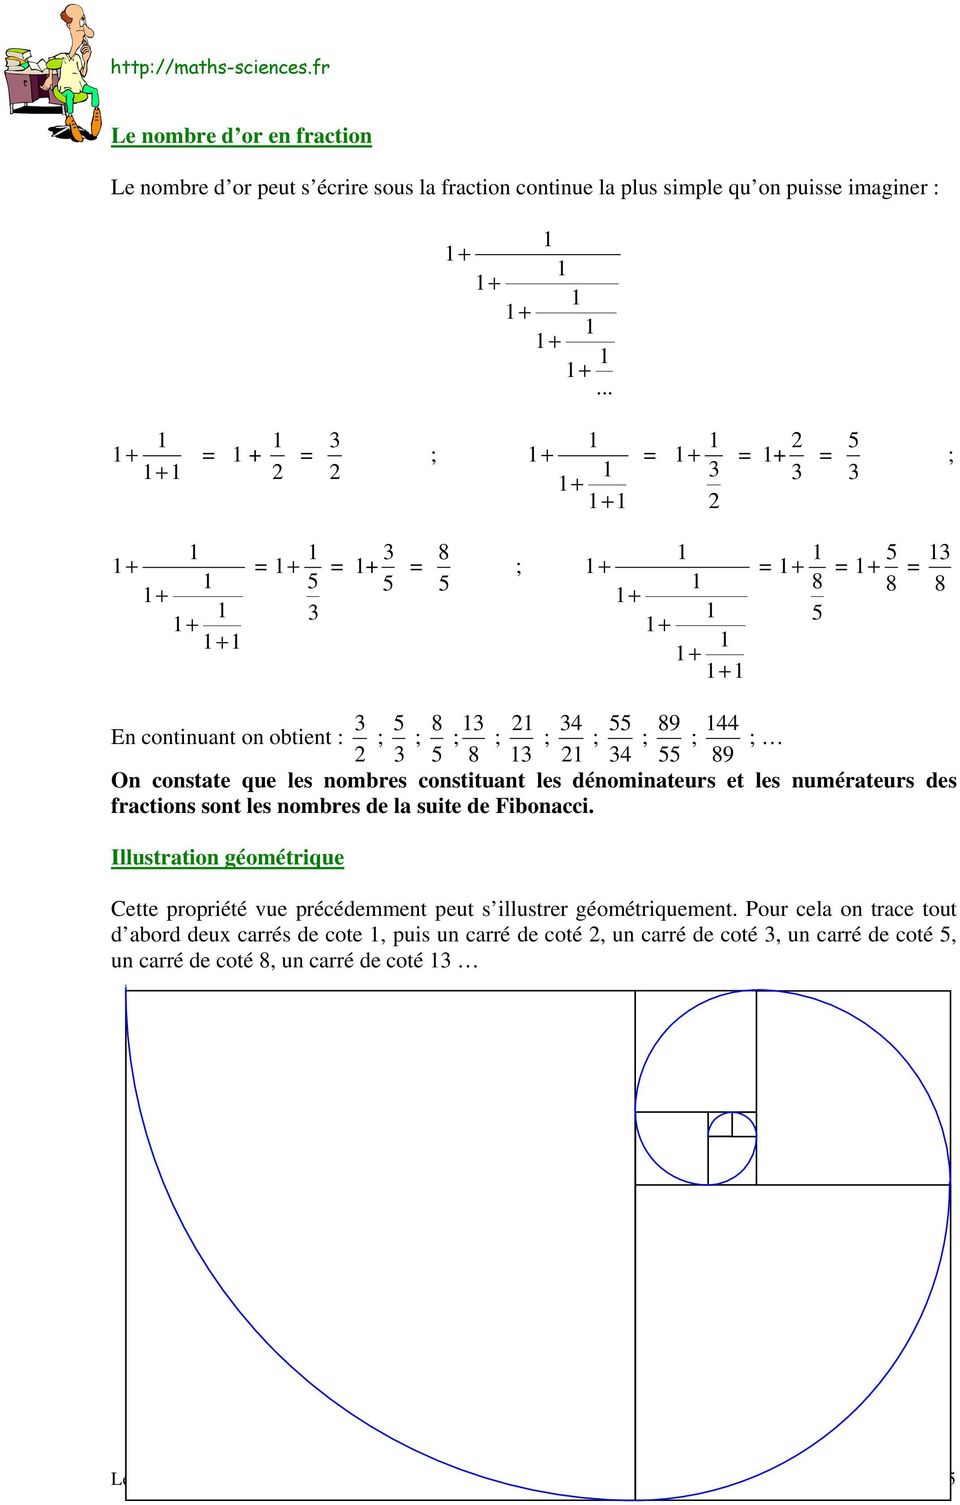 constate que les nombres constituant les dénominateurs et les numérateurs des fractions sont les nombres de la suite de Fibonacci.